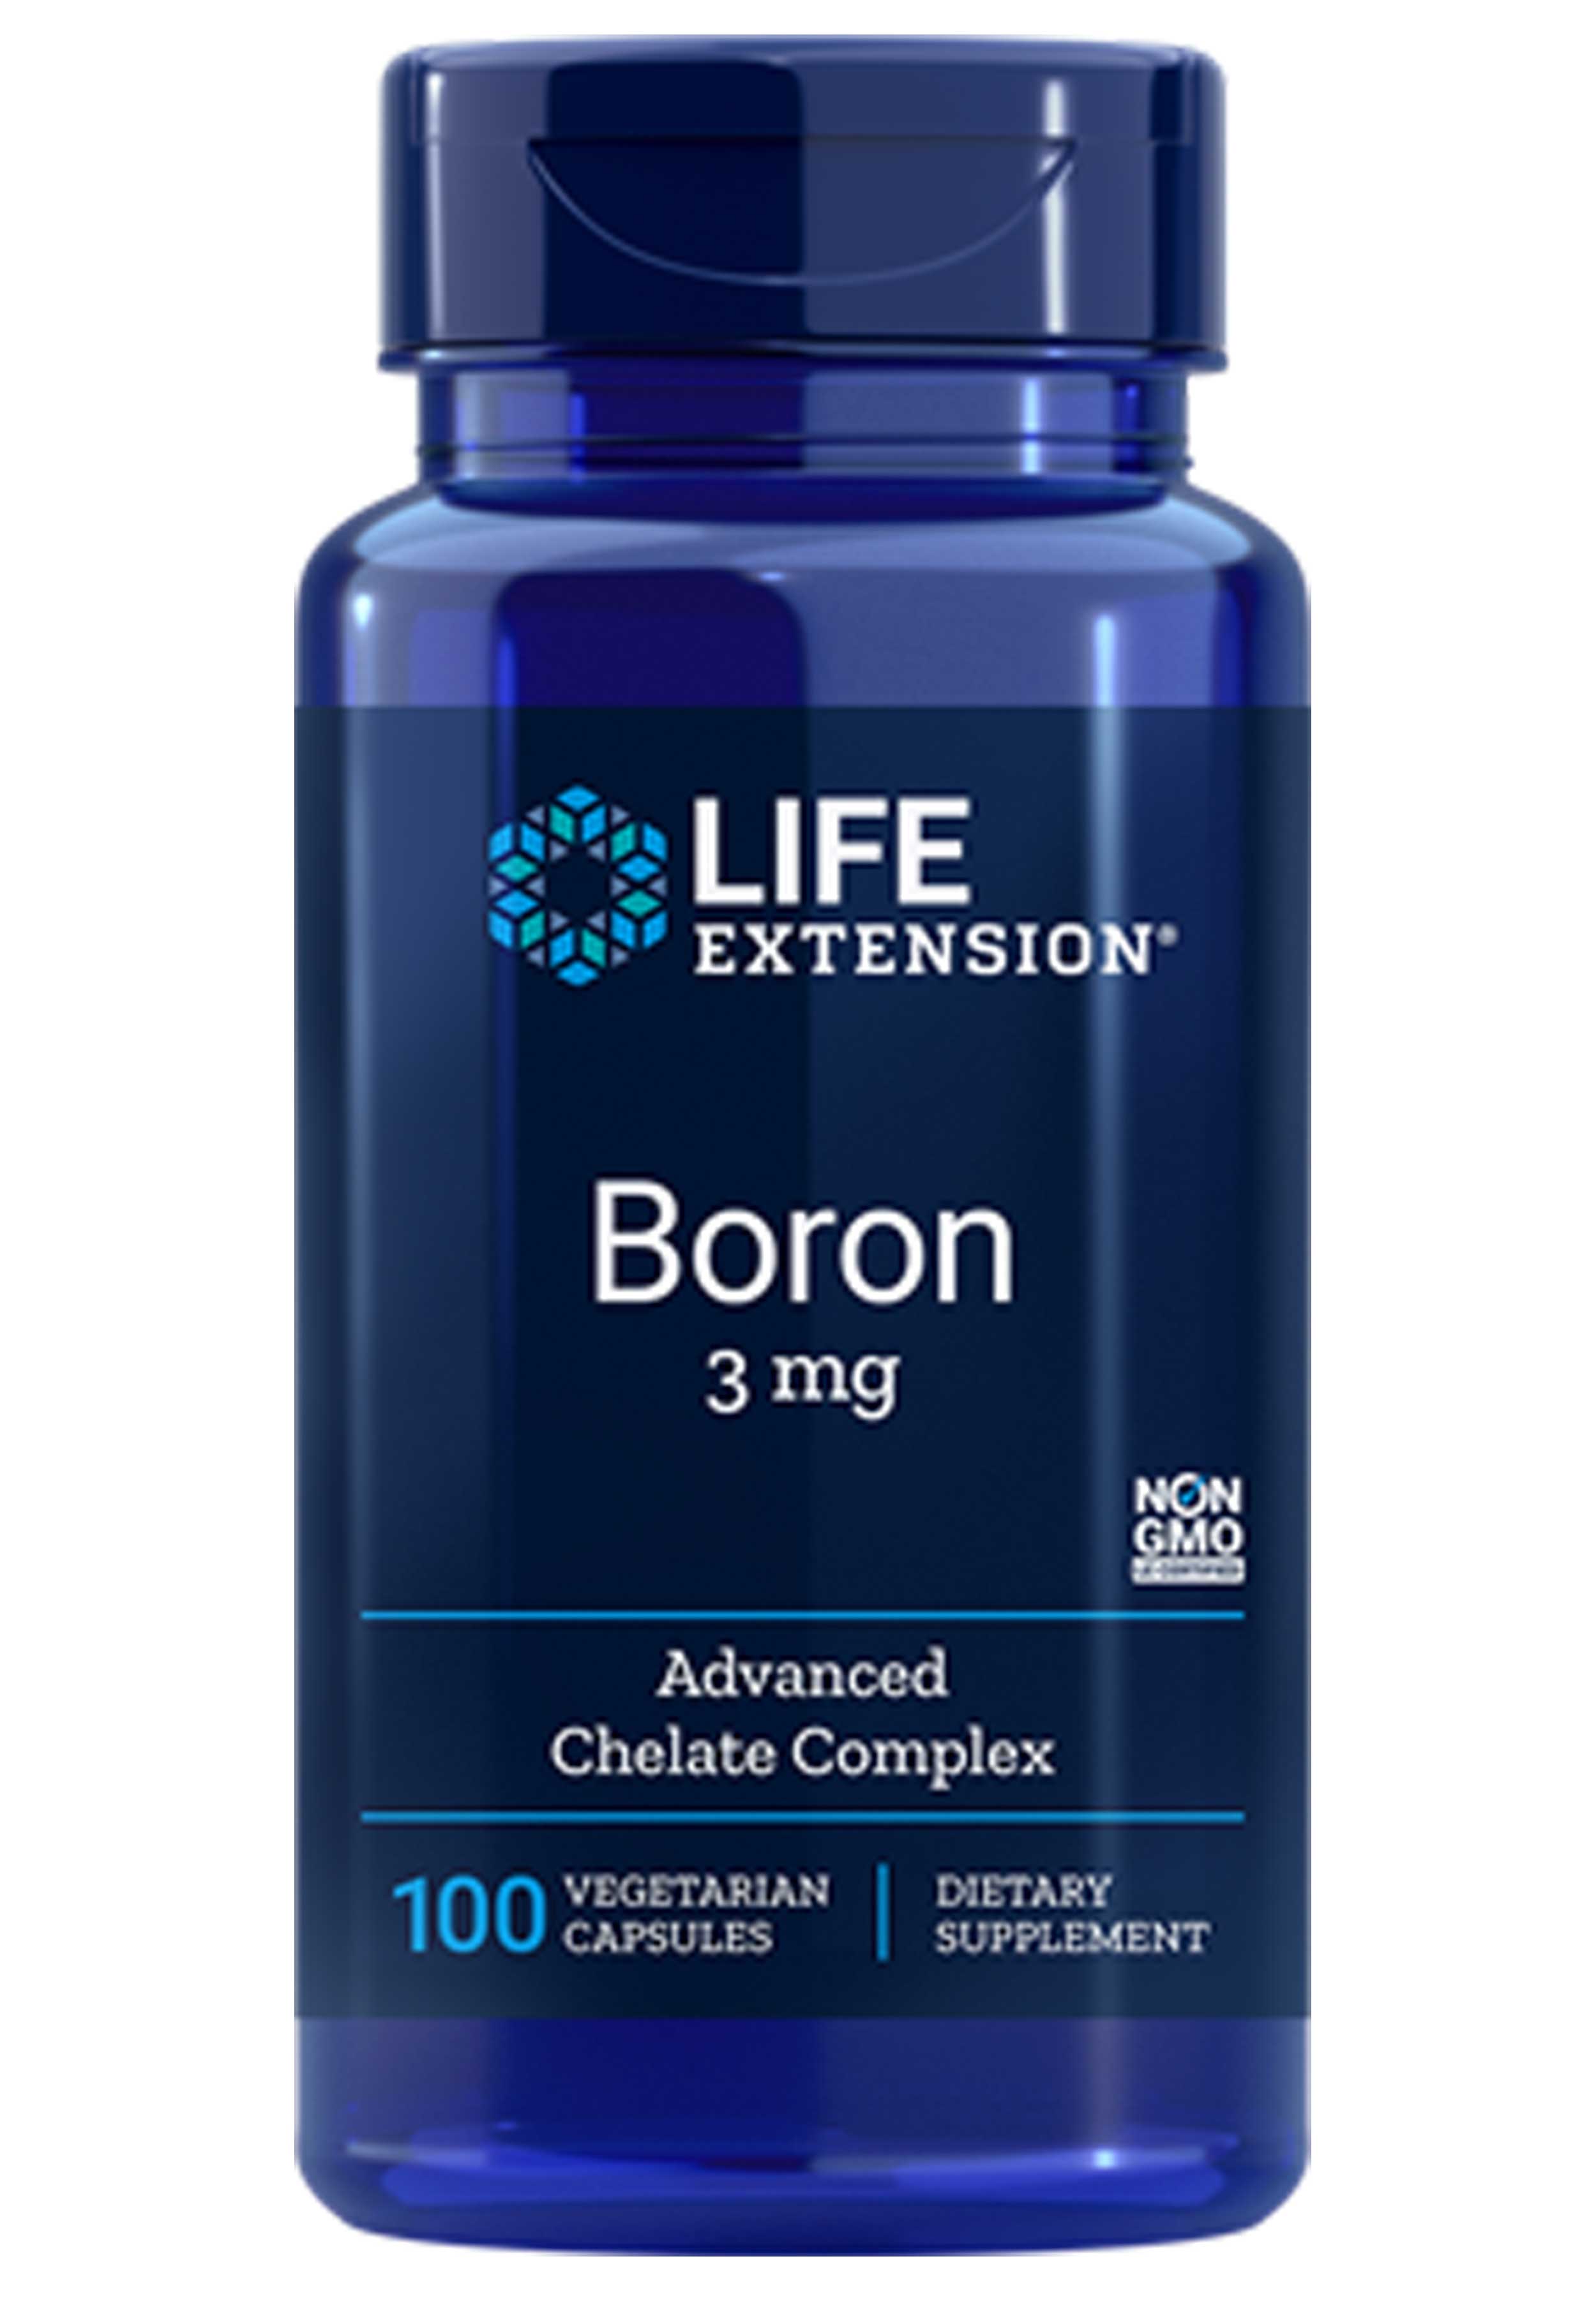 Life Extension Boron